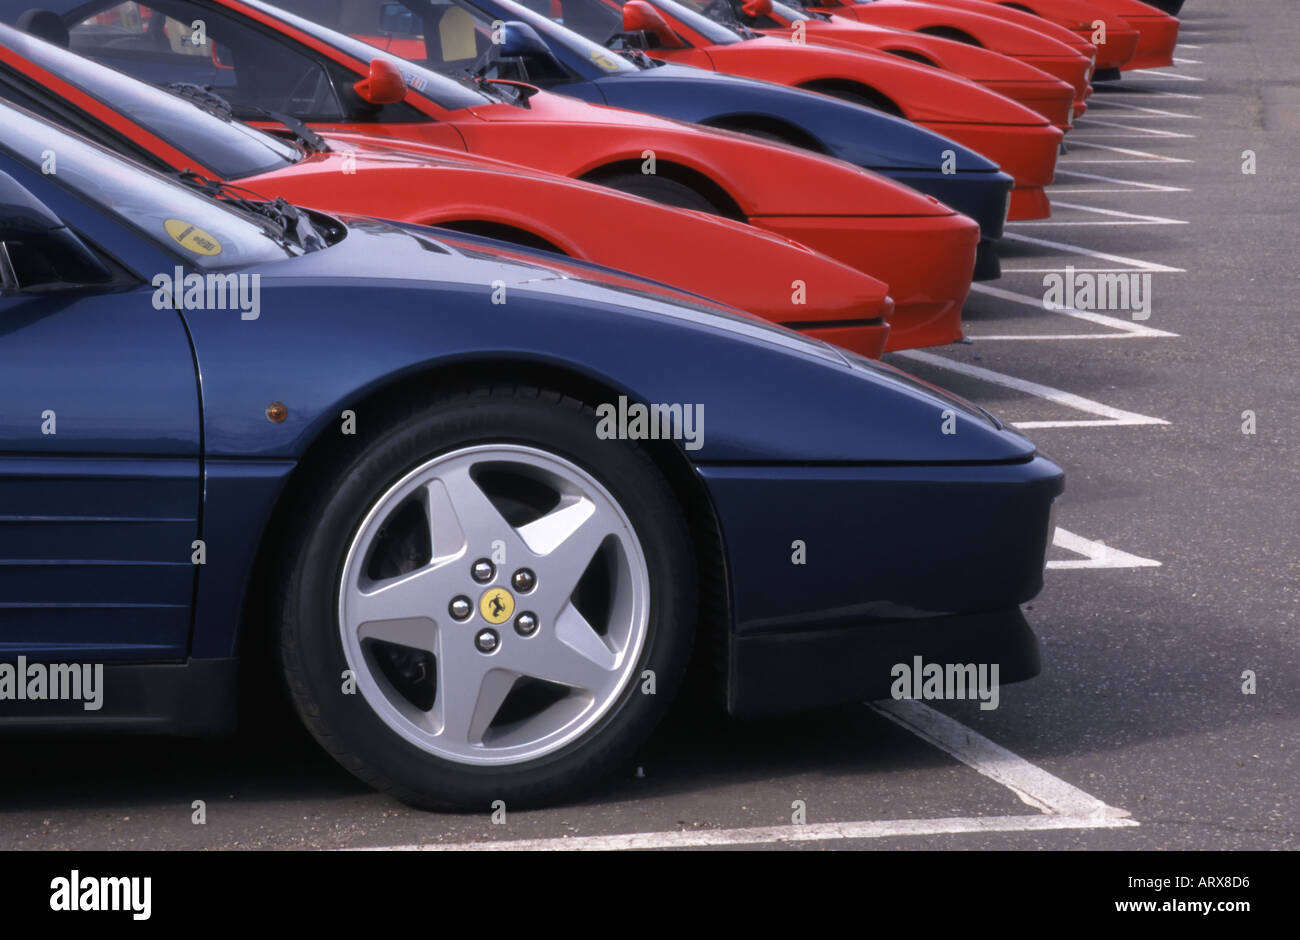 Vetture Ferrari sul display esterno showroom rivenditori Foto Stock